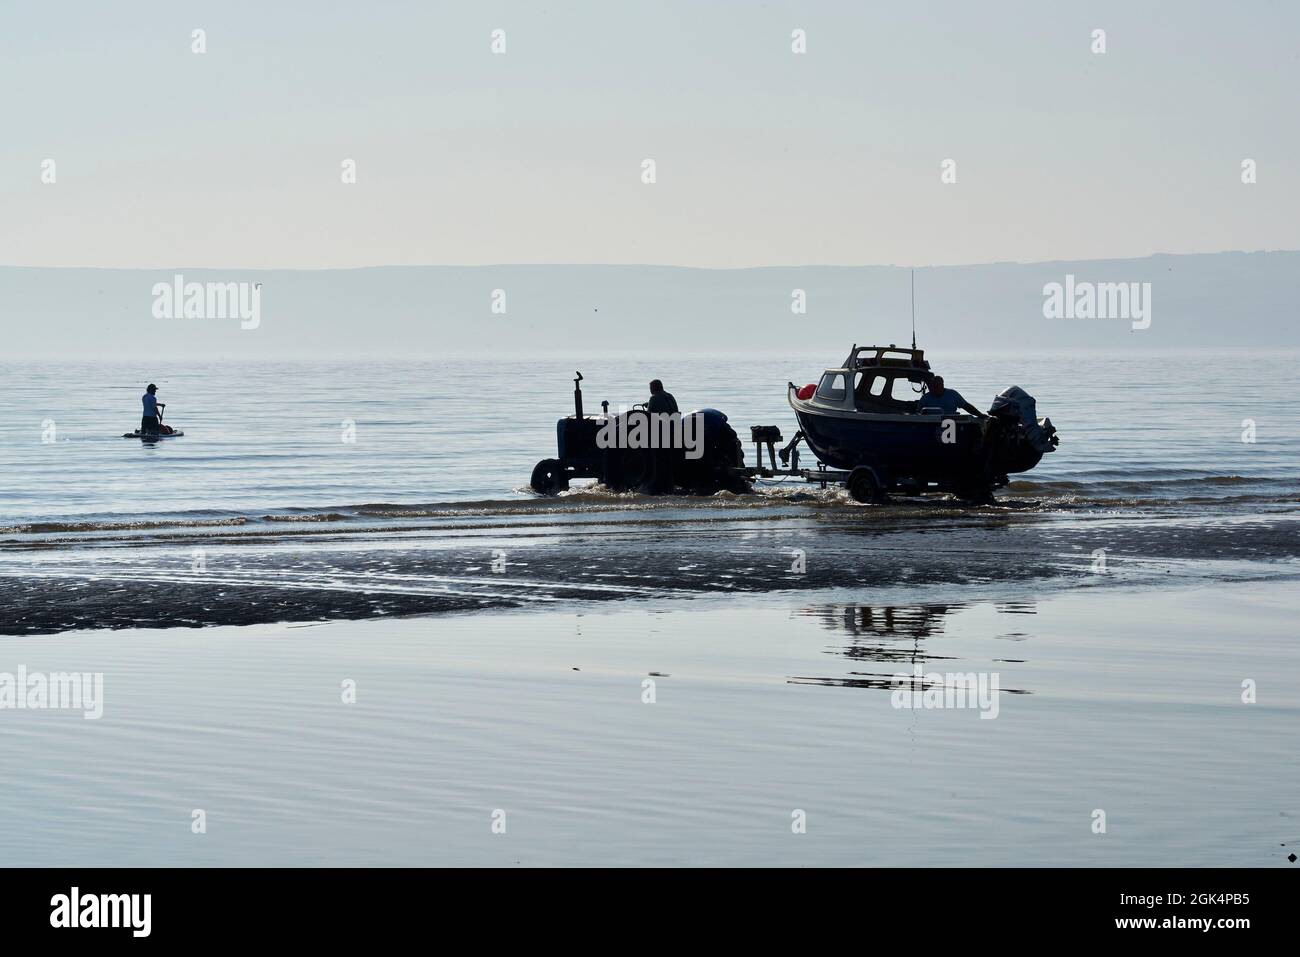 Alter Traktor zum Abschuss von Fischerbooten Fischerboote am Filey Beach, North Yorkshire Ostküste, beschäftigt mit Urlaubern, Nordengland, Großbritannien Stockfoto